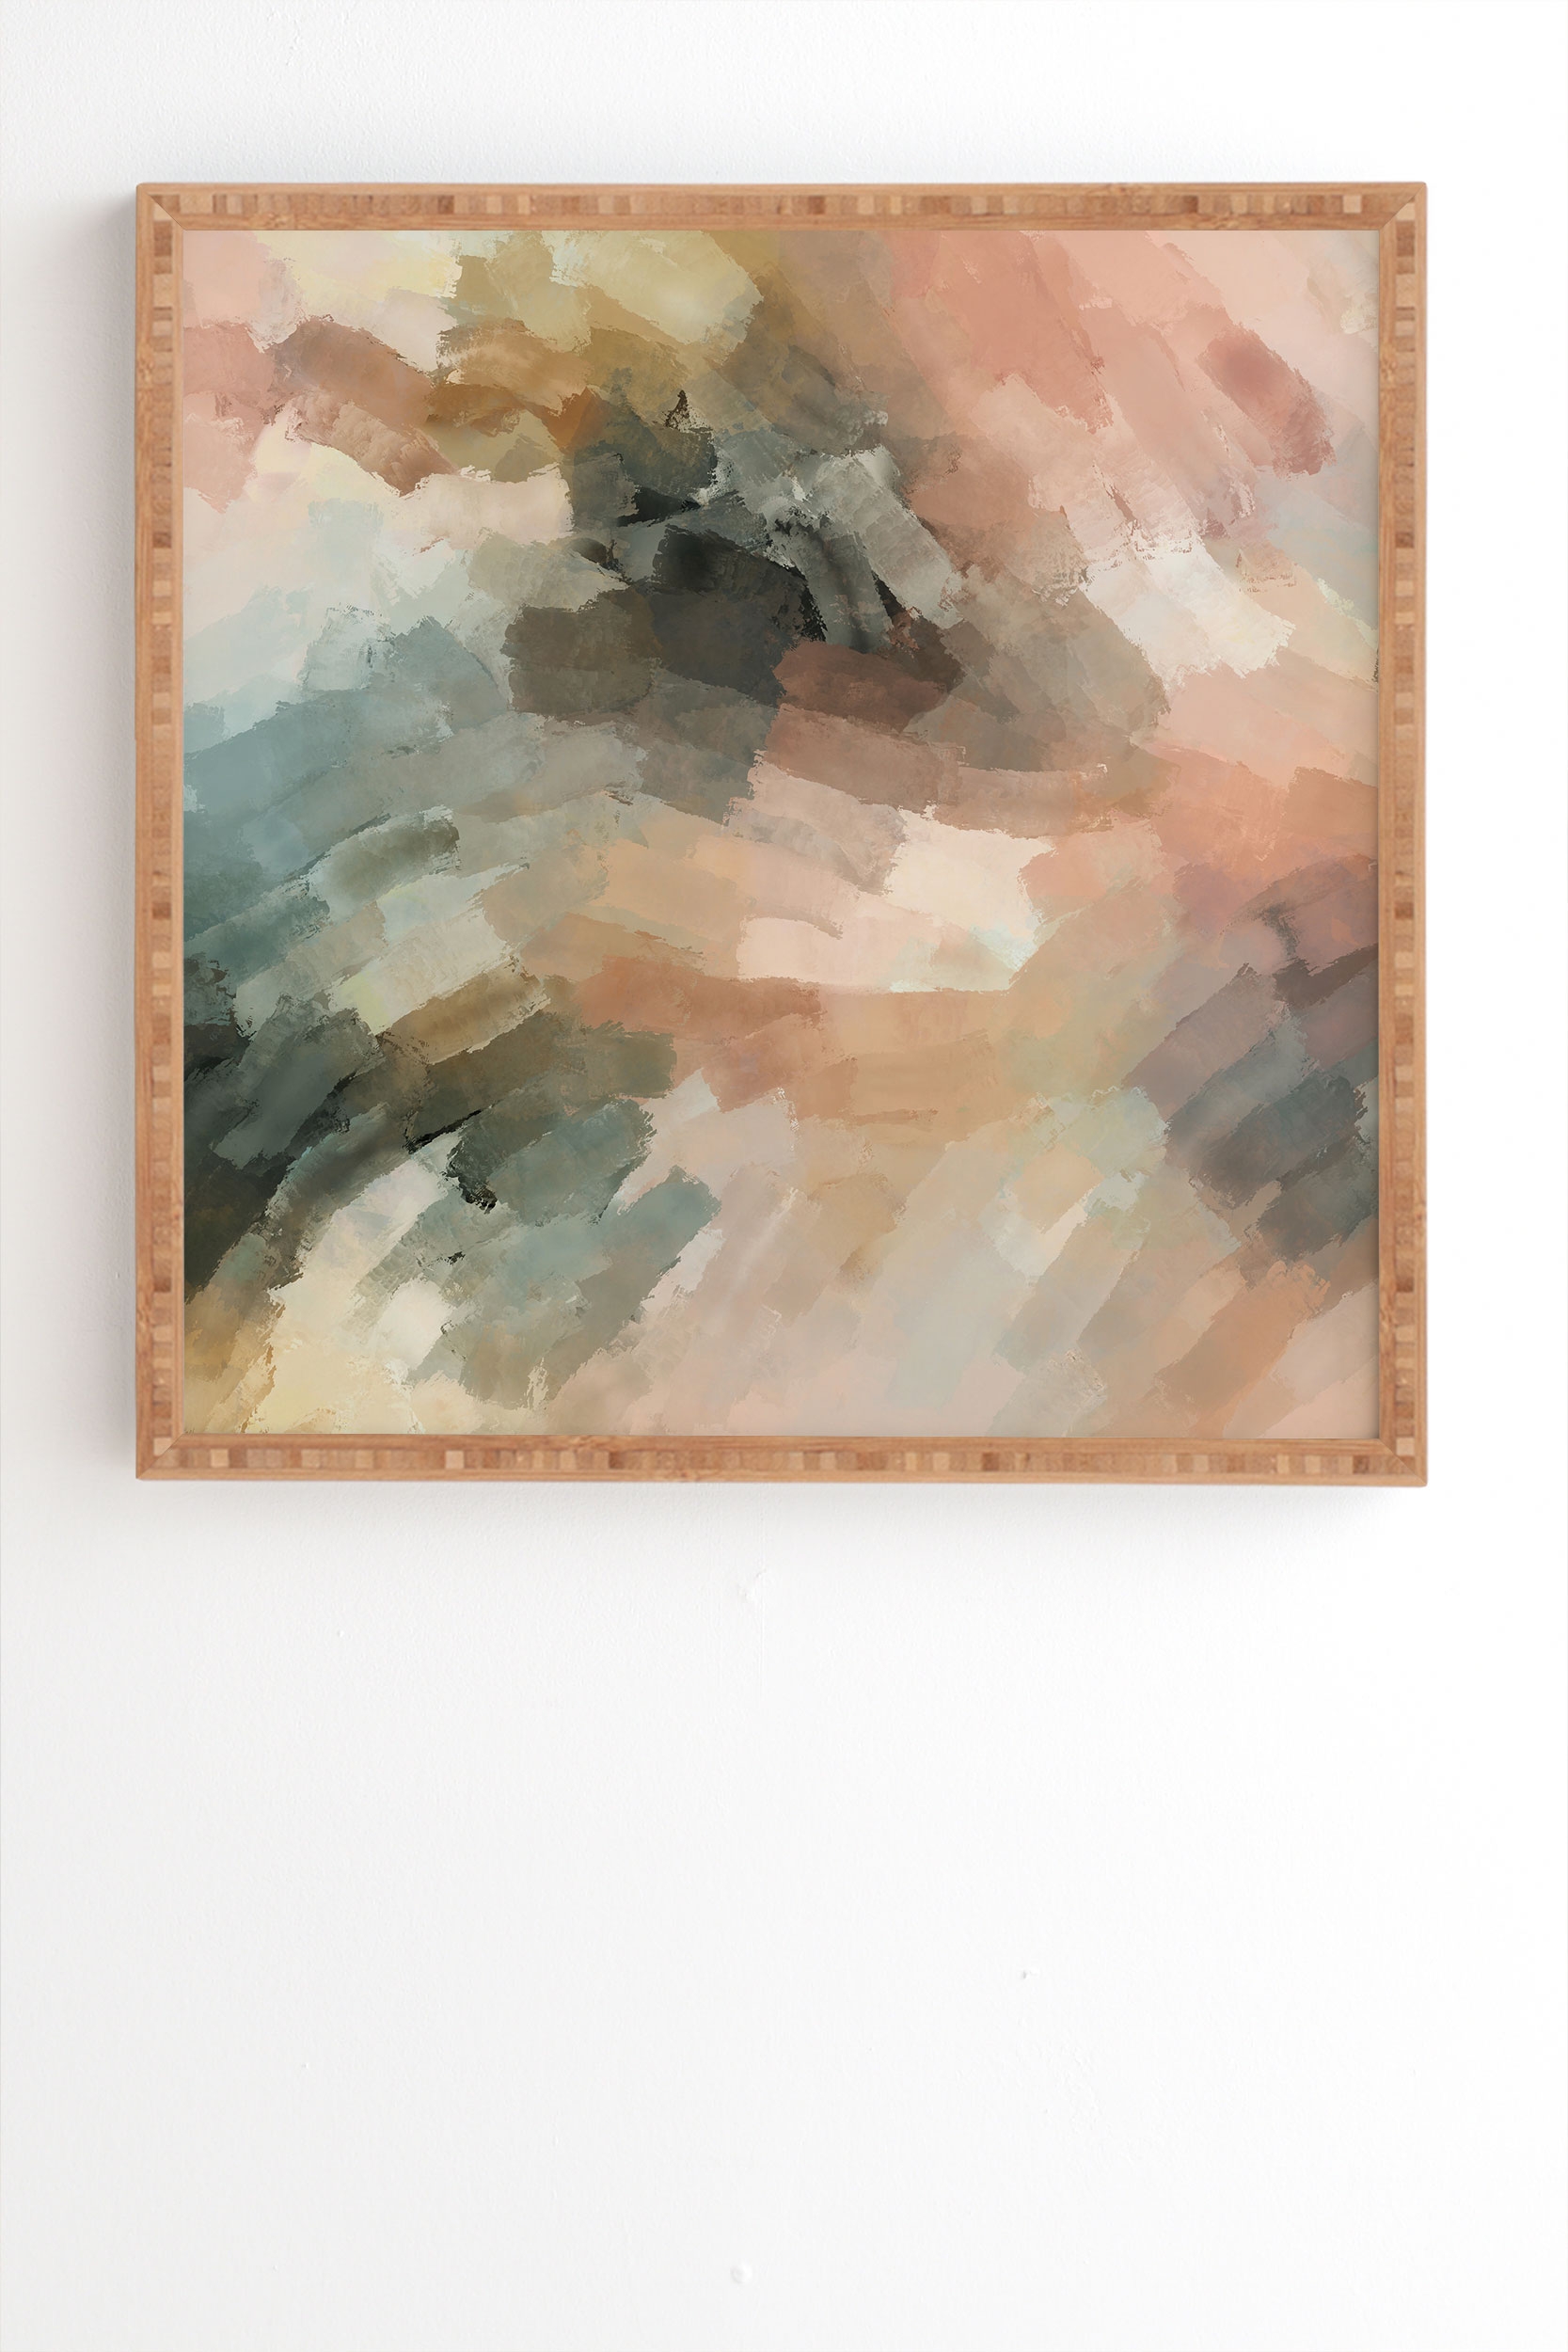 Waves Strokes Iii by Marta Barragan Camarasa - Framed Wall Art Bamboo 14" x 16.5" - Image 1